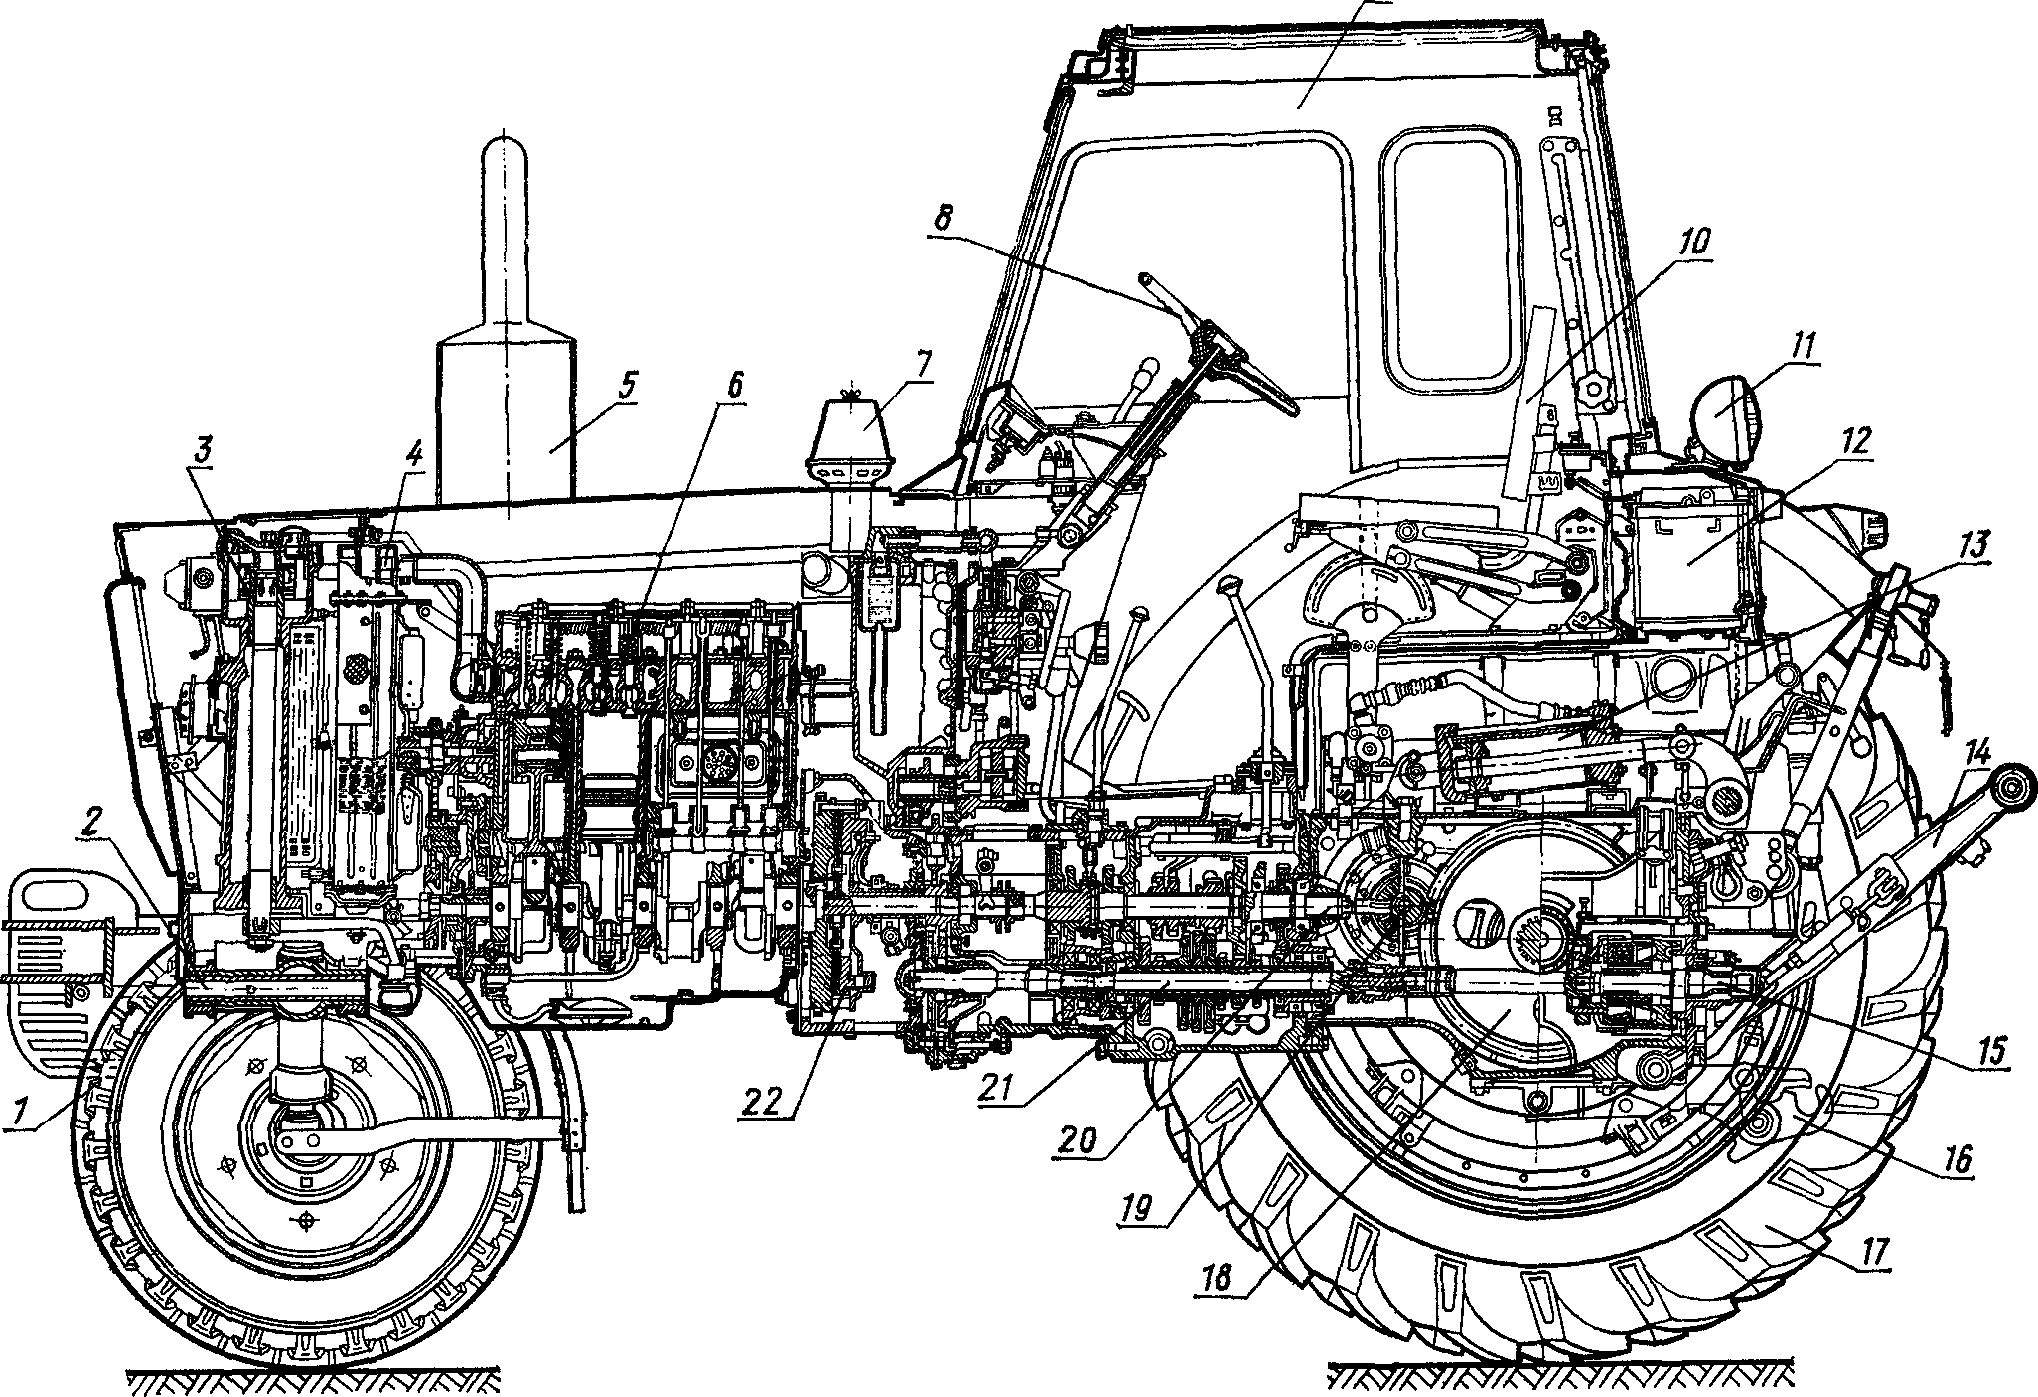 Трактор юмз-6: технические характеристики